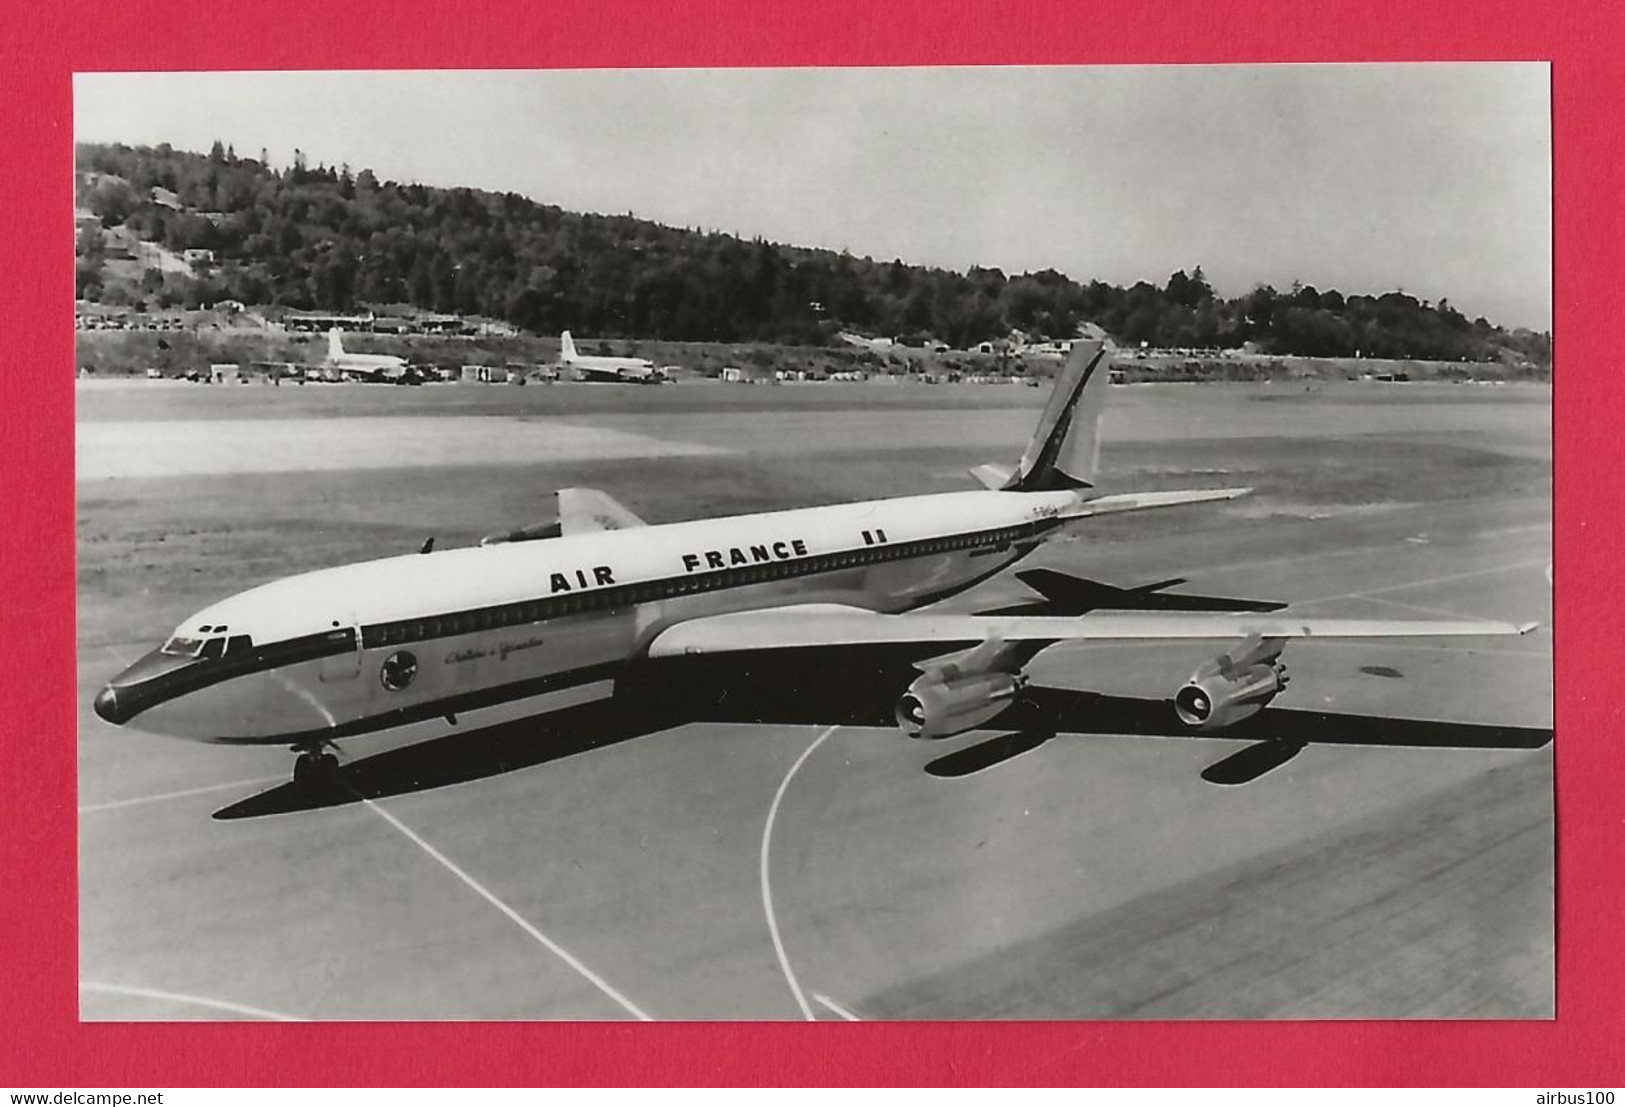 BELLE PHOTO REPRODUCTION AVION PLANE - AIR FRANCE BOEING 707-328A CHATEAU DE VERSAILLES F-BHSA - (1959 à 1961) - Aviation